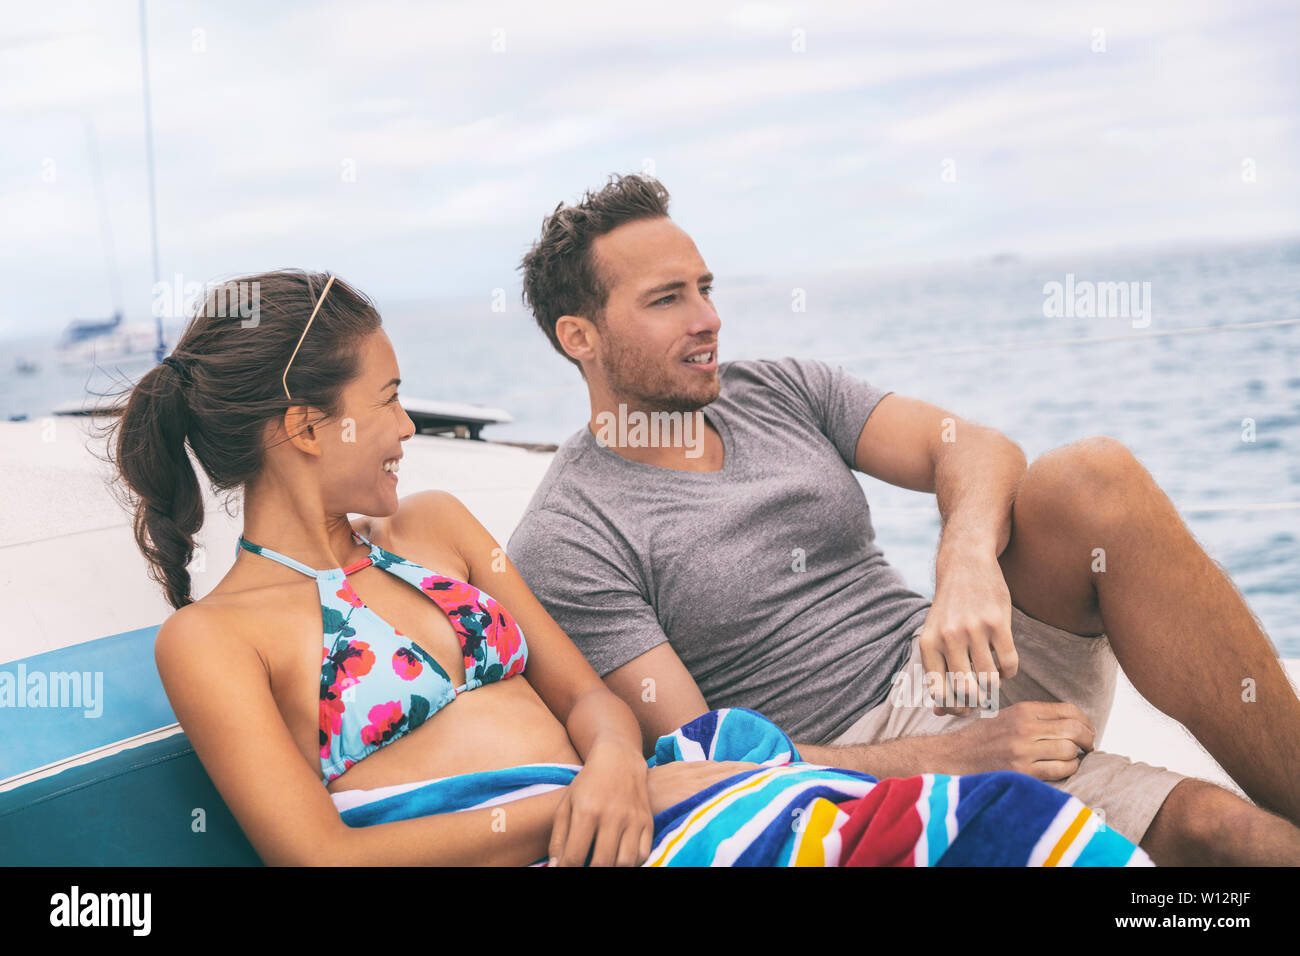 Yacht Yacht lifestyle Ehepaar miteinander reden auf Kreuzfahrtschiff in Hawaii Urlaub. Zwei Touristen Urlaub genießen Sommer Urlaub, Frau im Bikini. Stockfoto